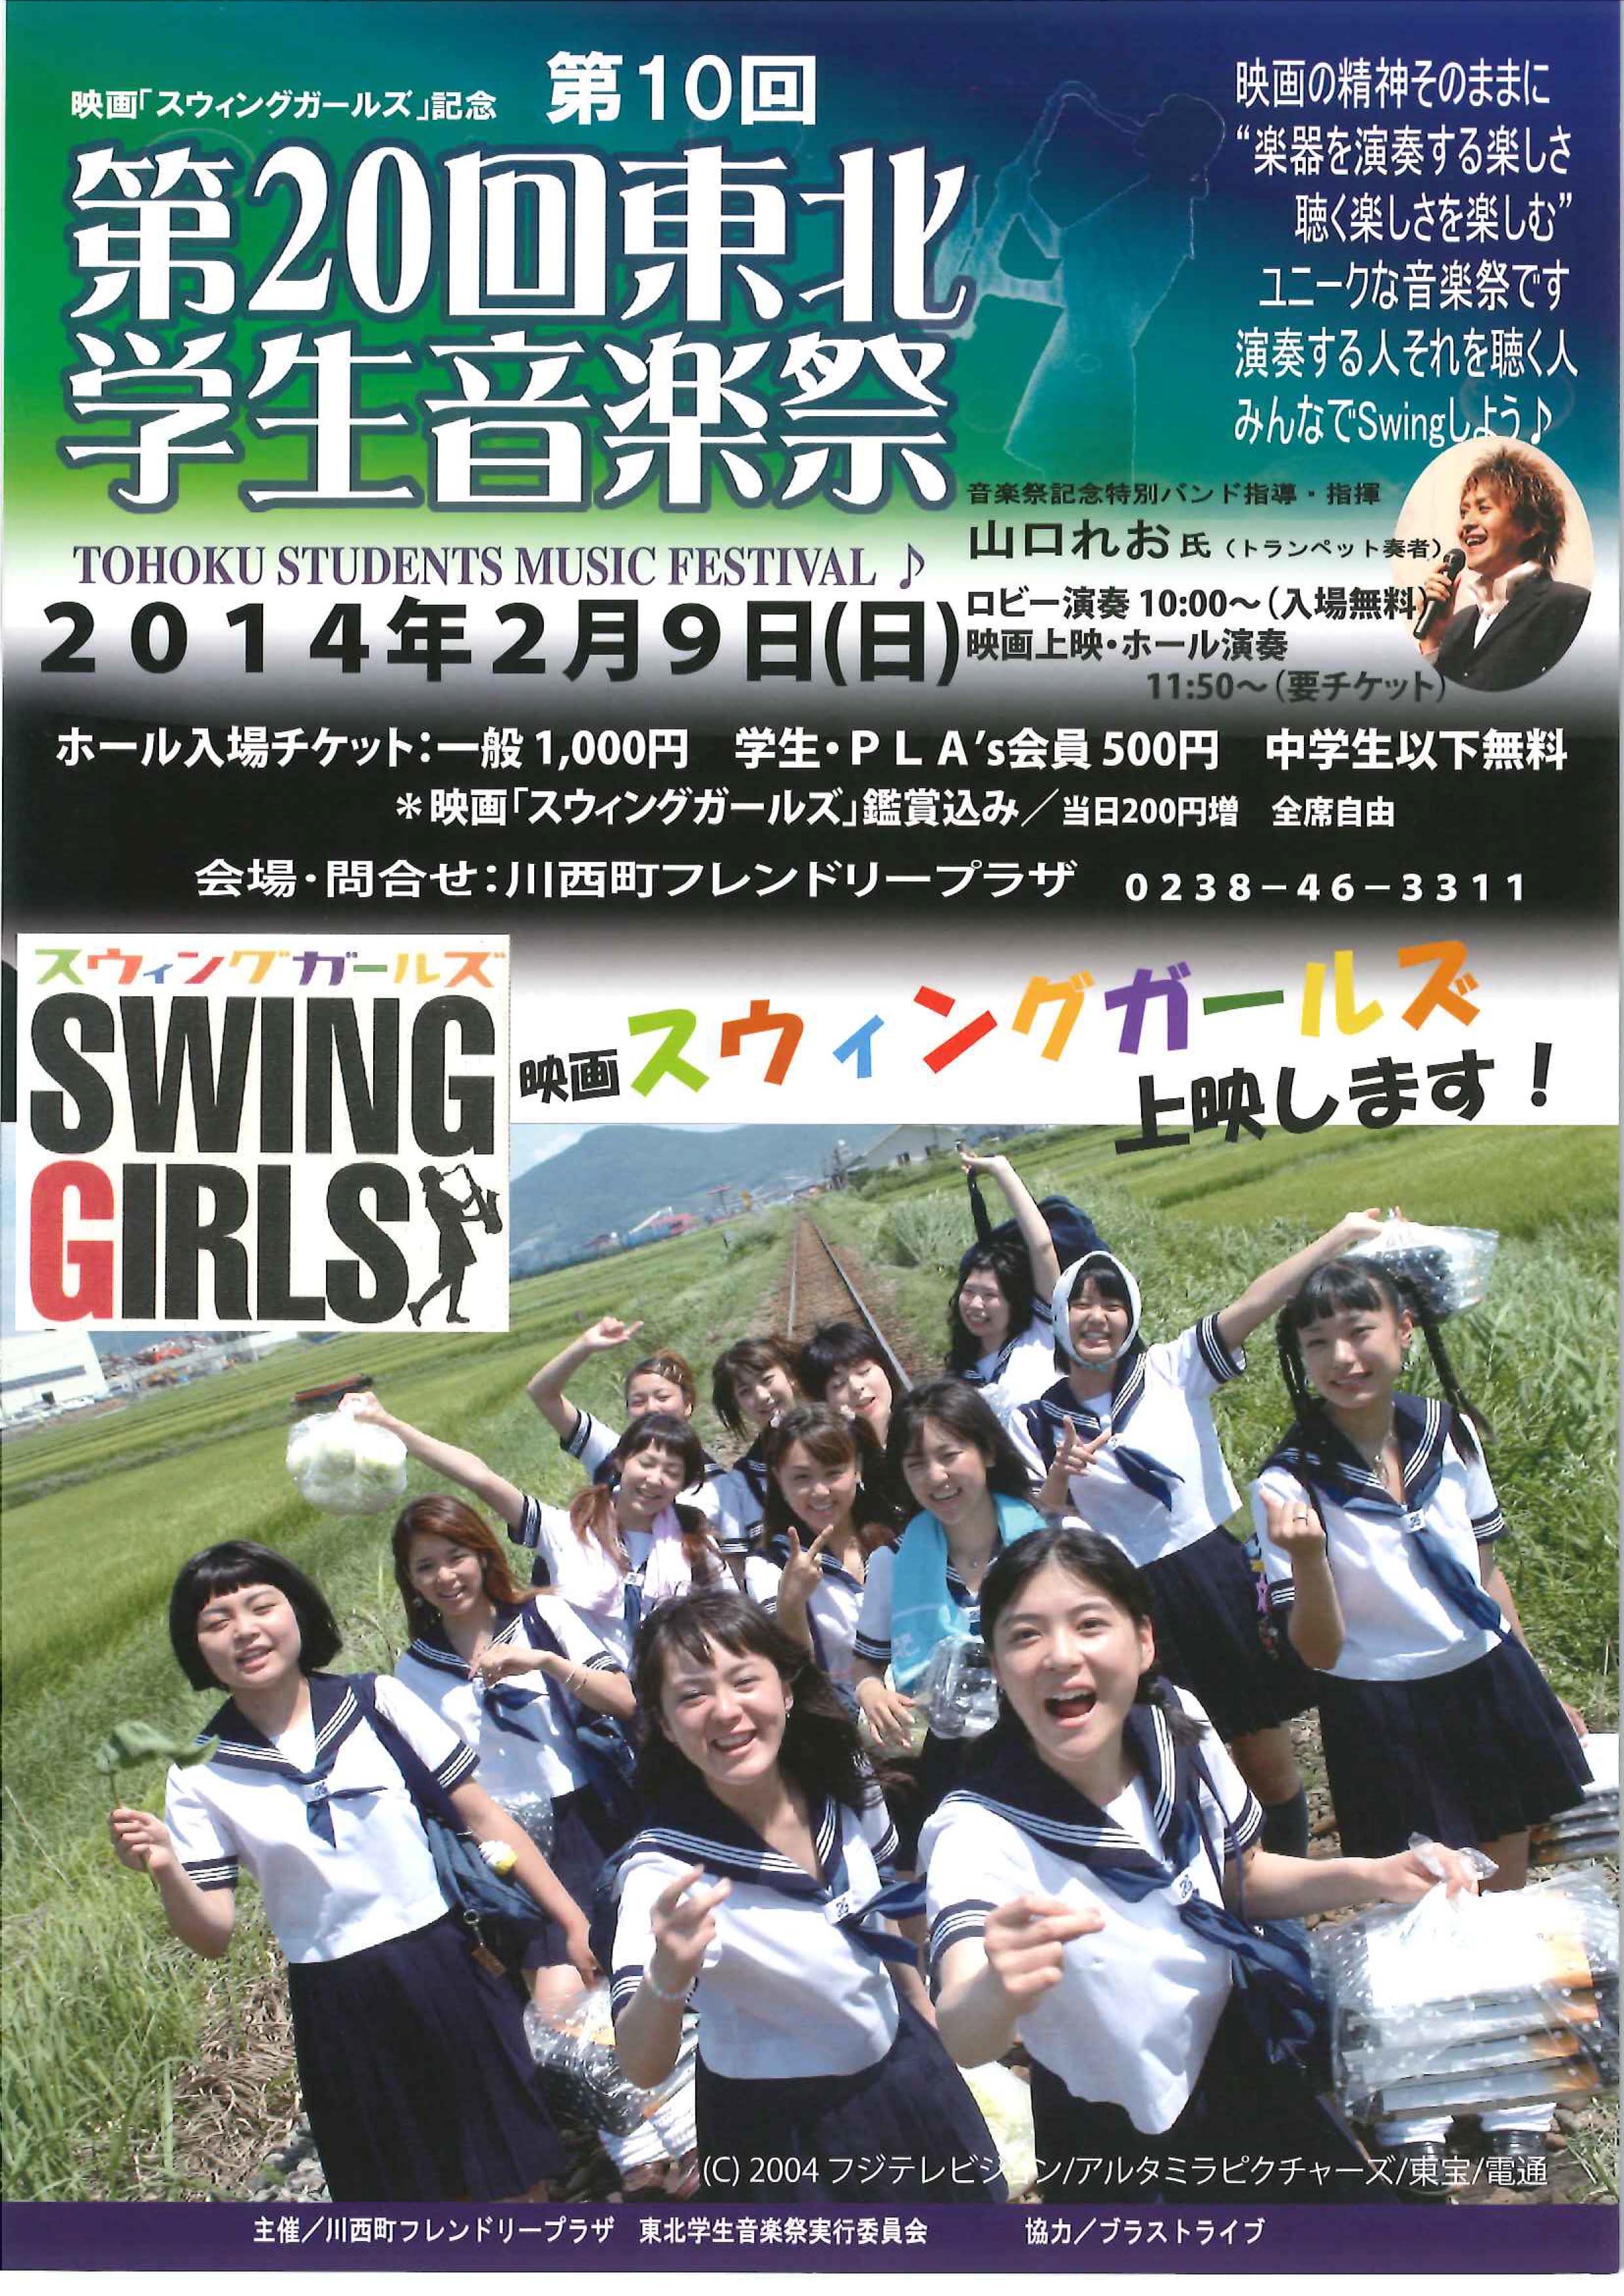 映画「スウィングガールズ」記念 第10回「第20回東北学生音楽祭」開催のお知らせ